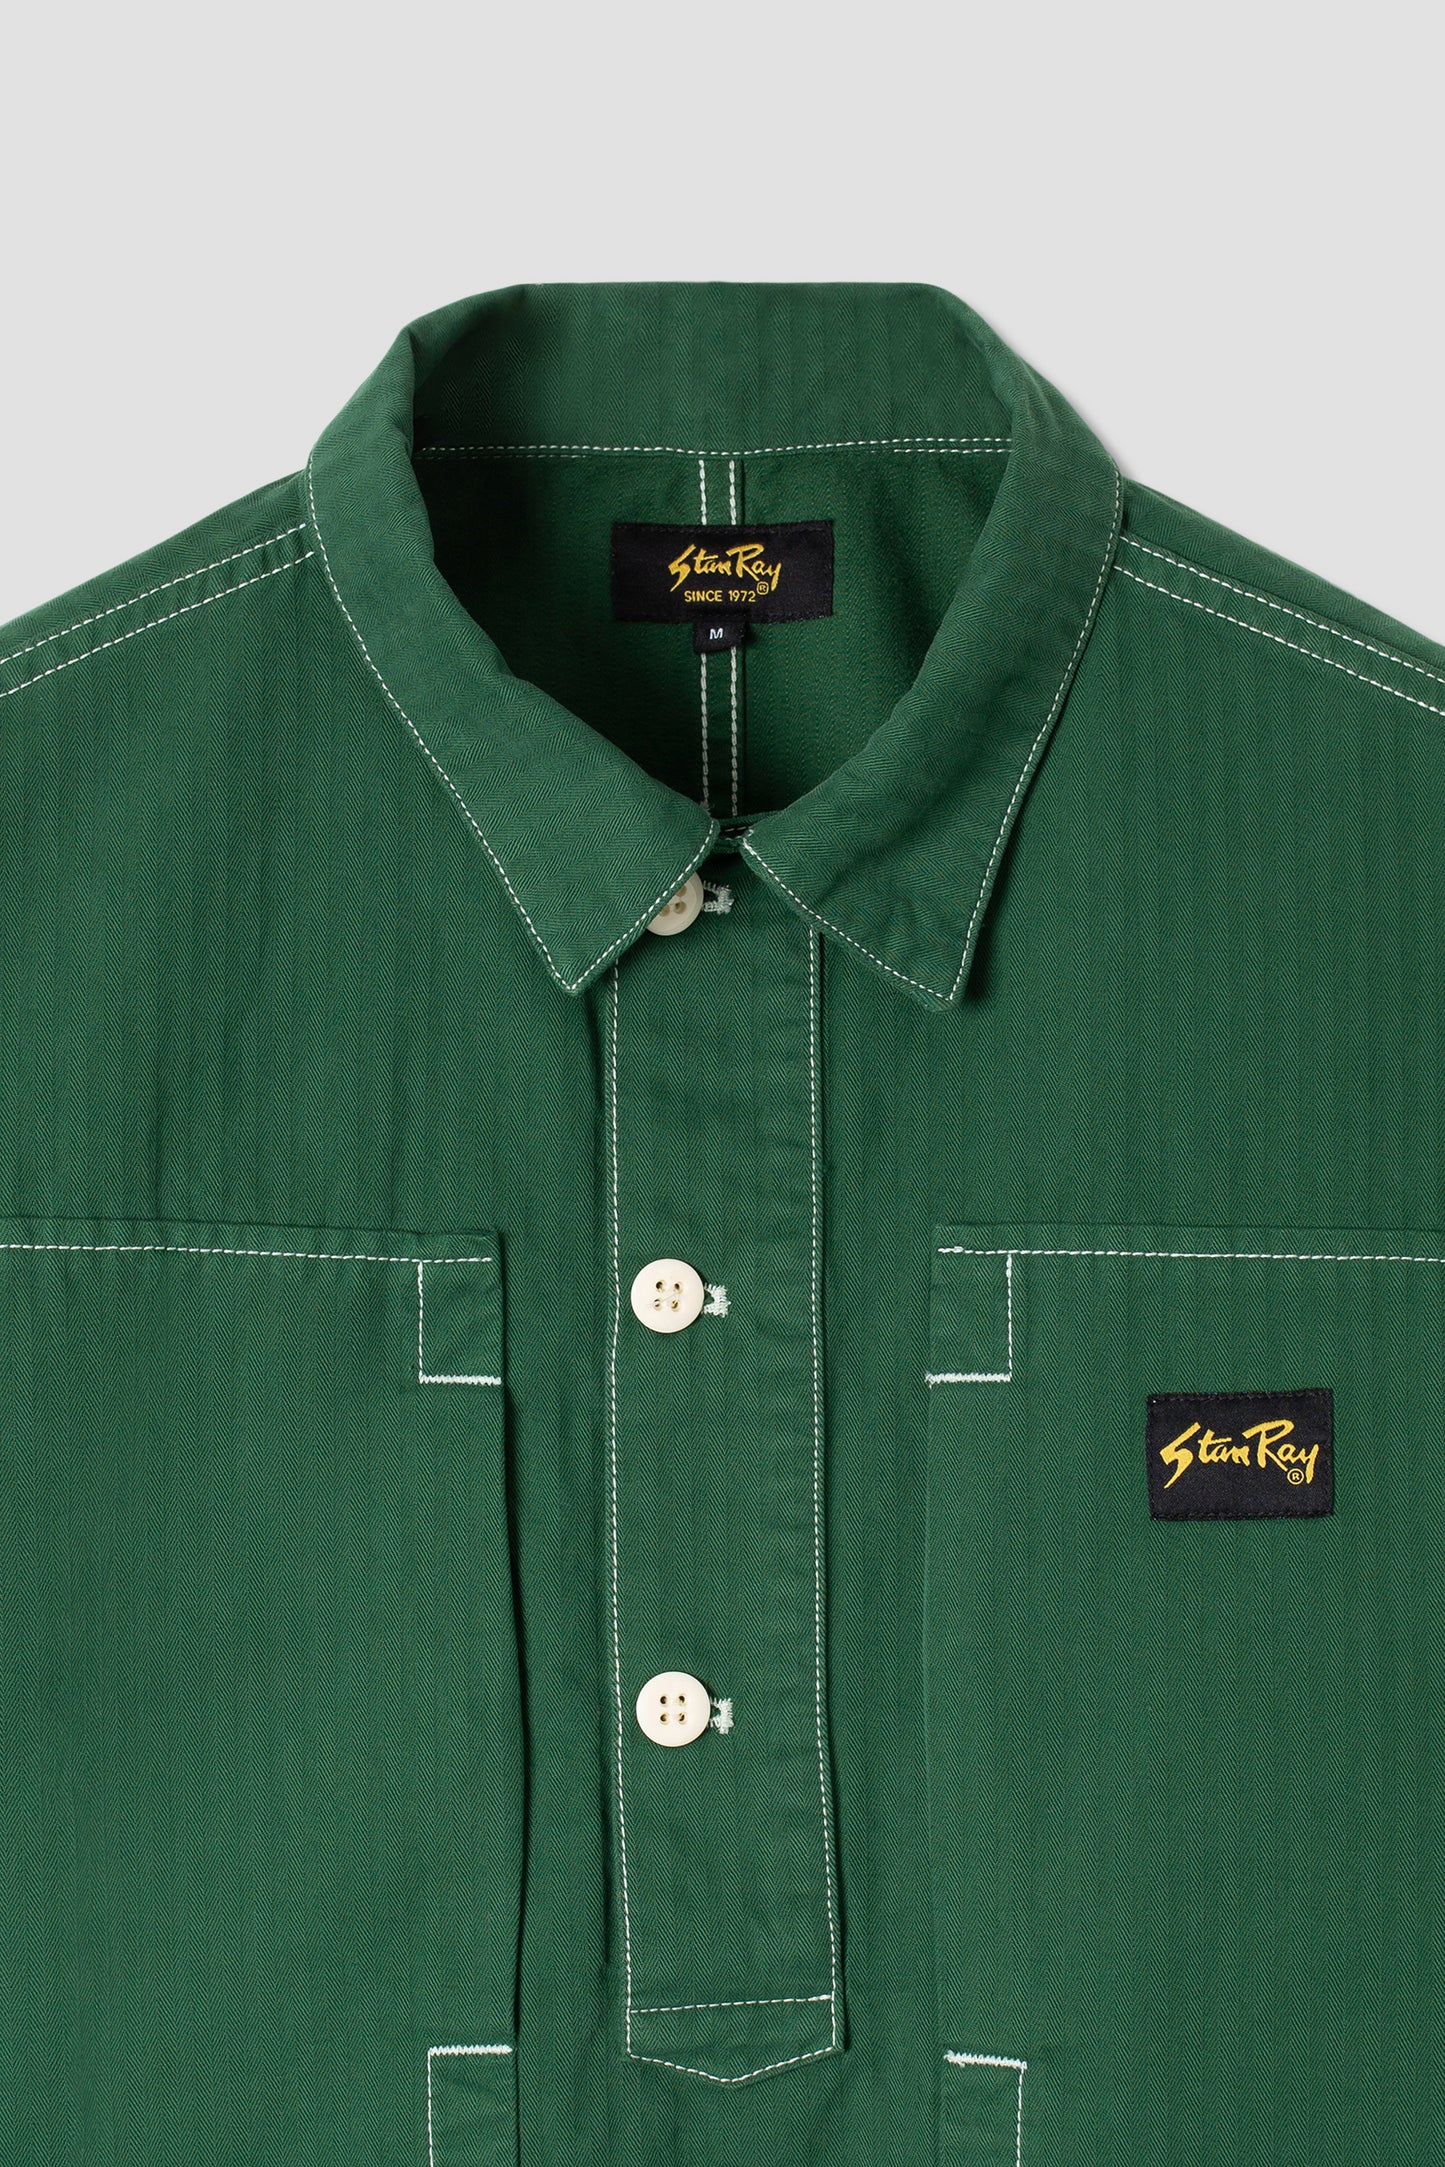 Painters Shirt (Racing Green Herringbone Twill)